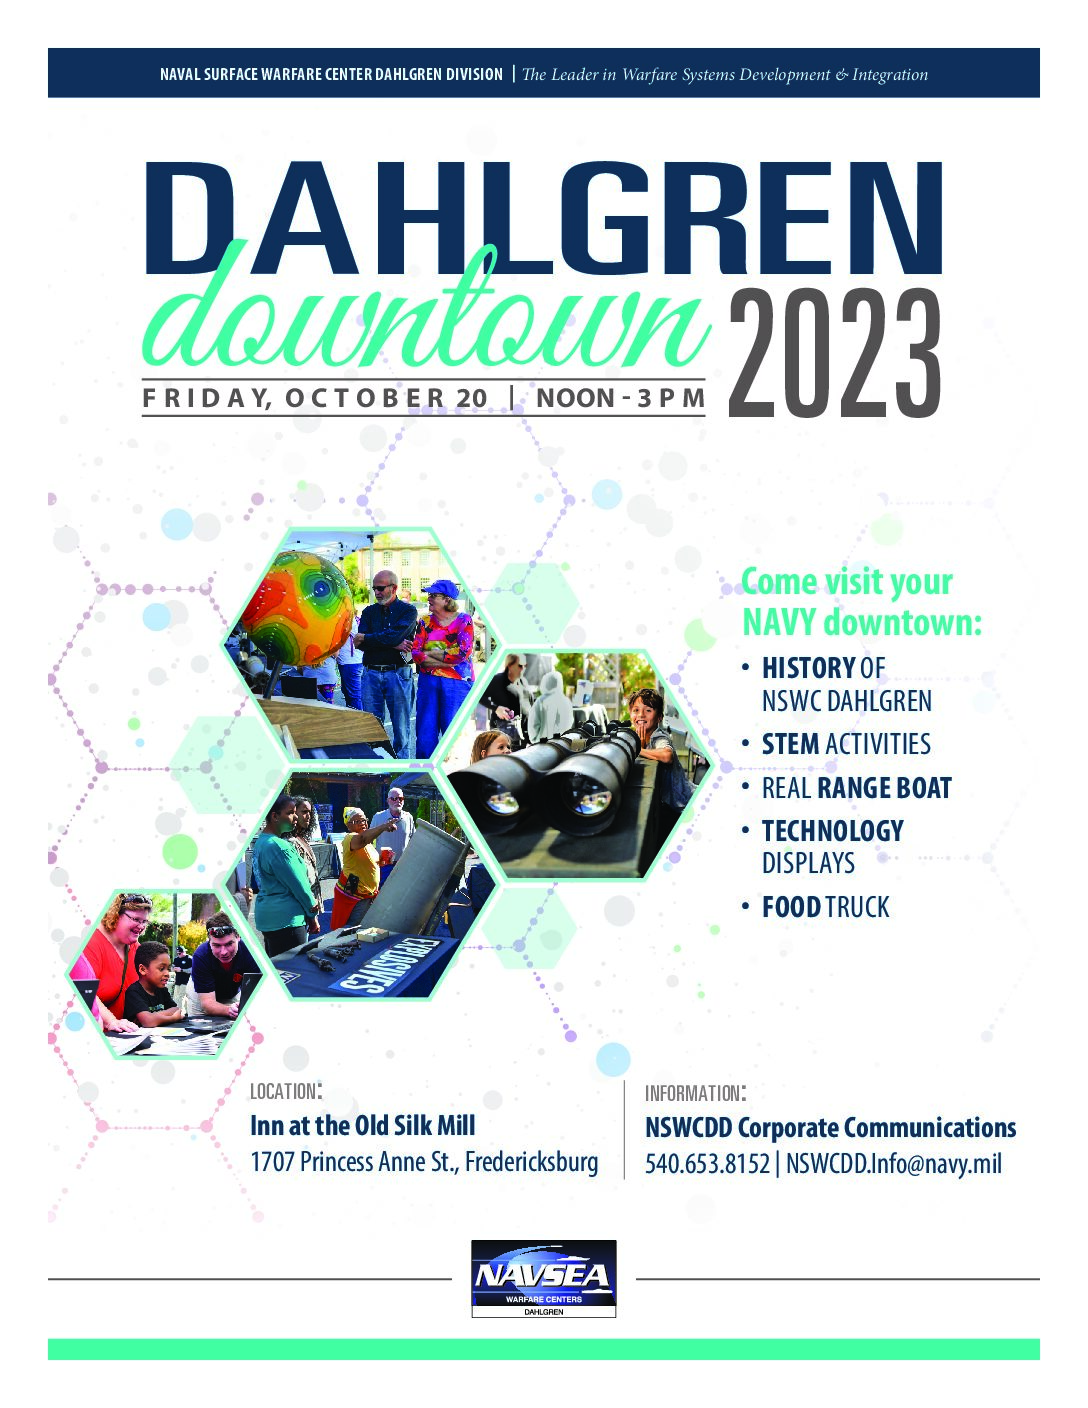 Dahlgren Downtown 2023